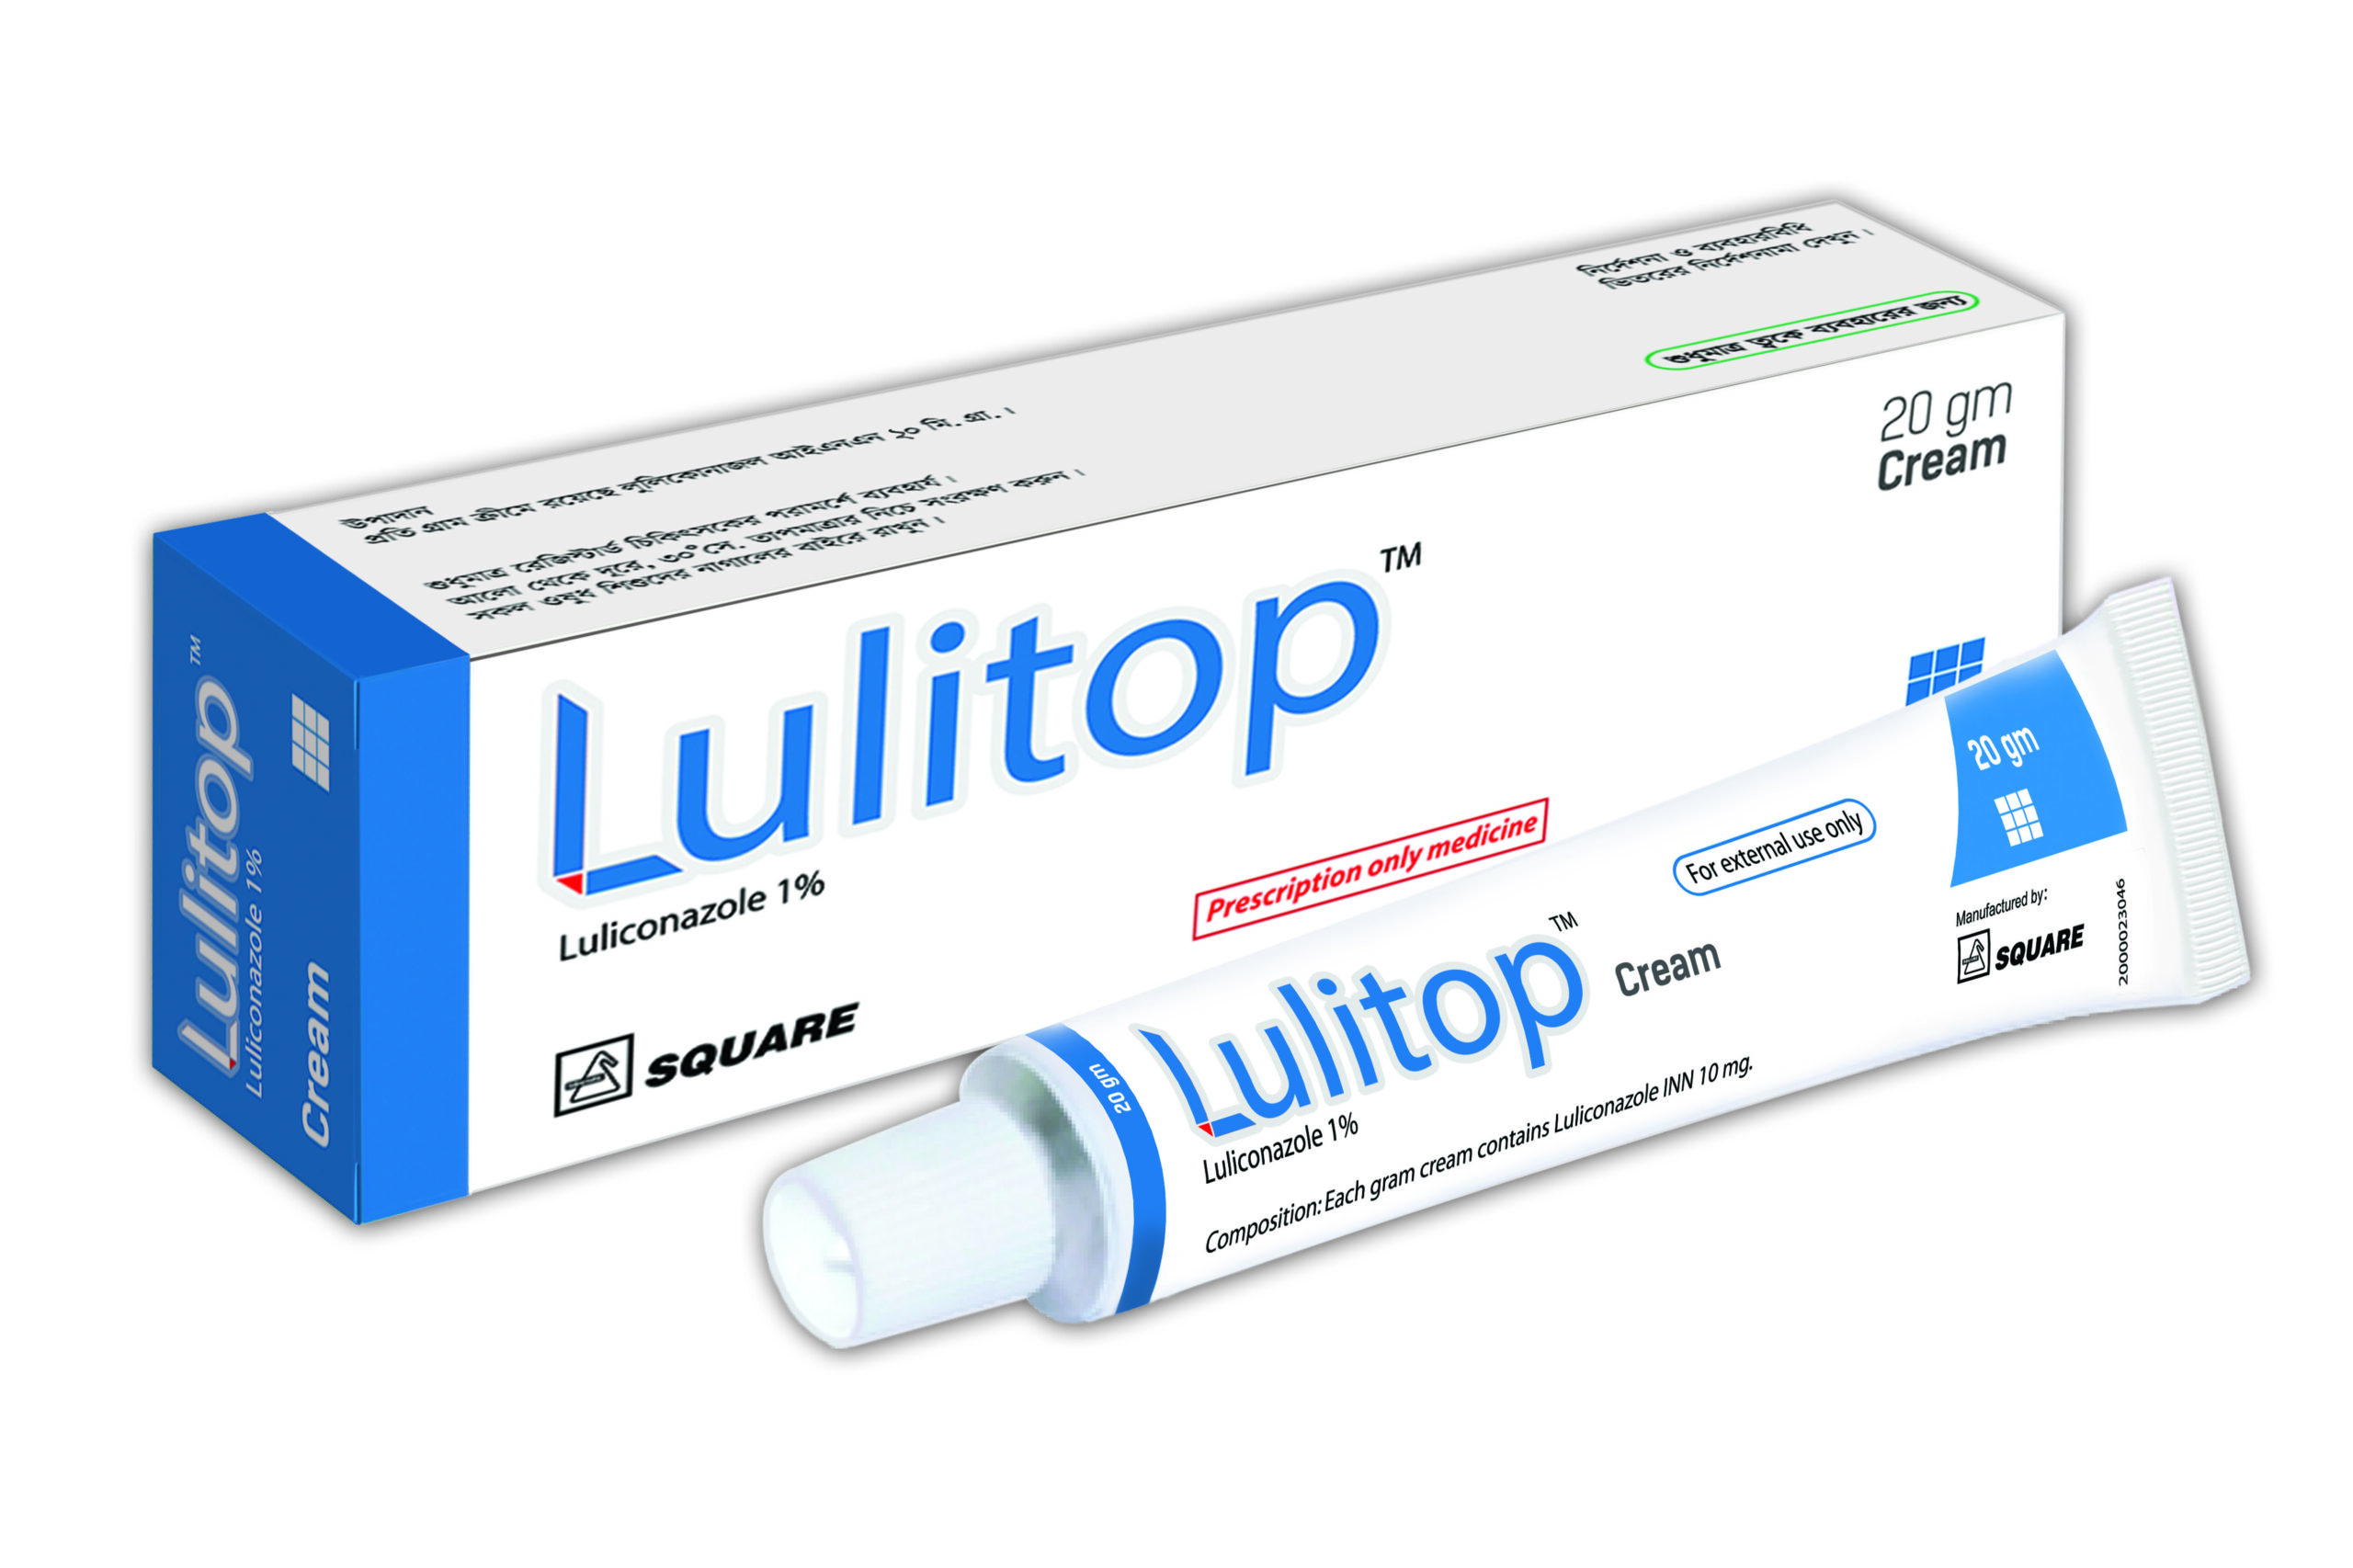 Lulitop Cream-20 gm